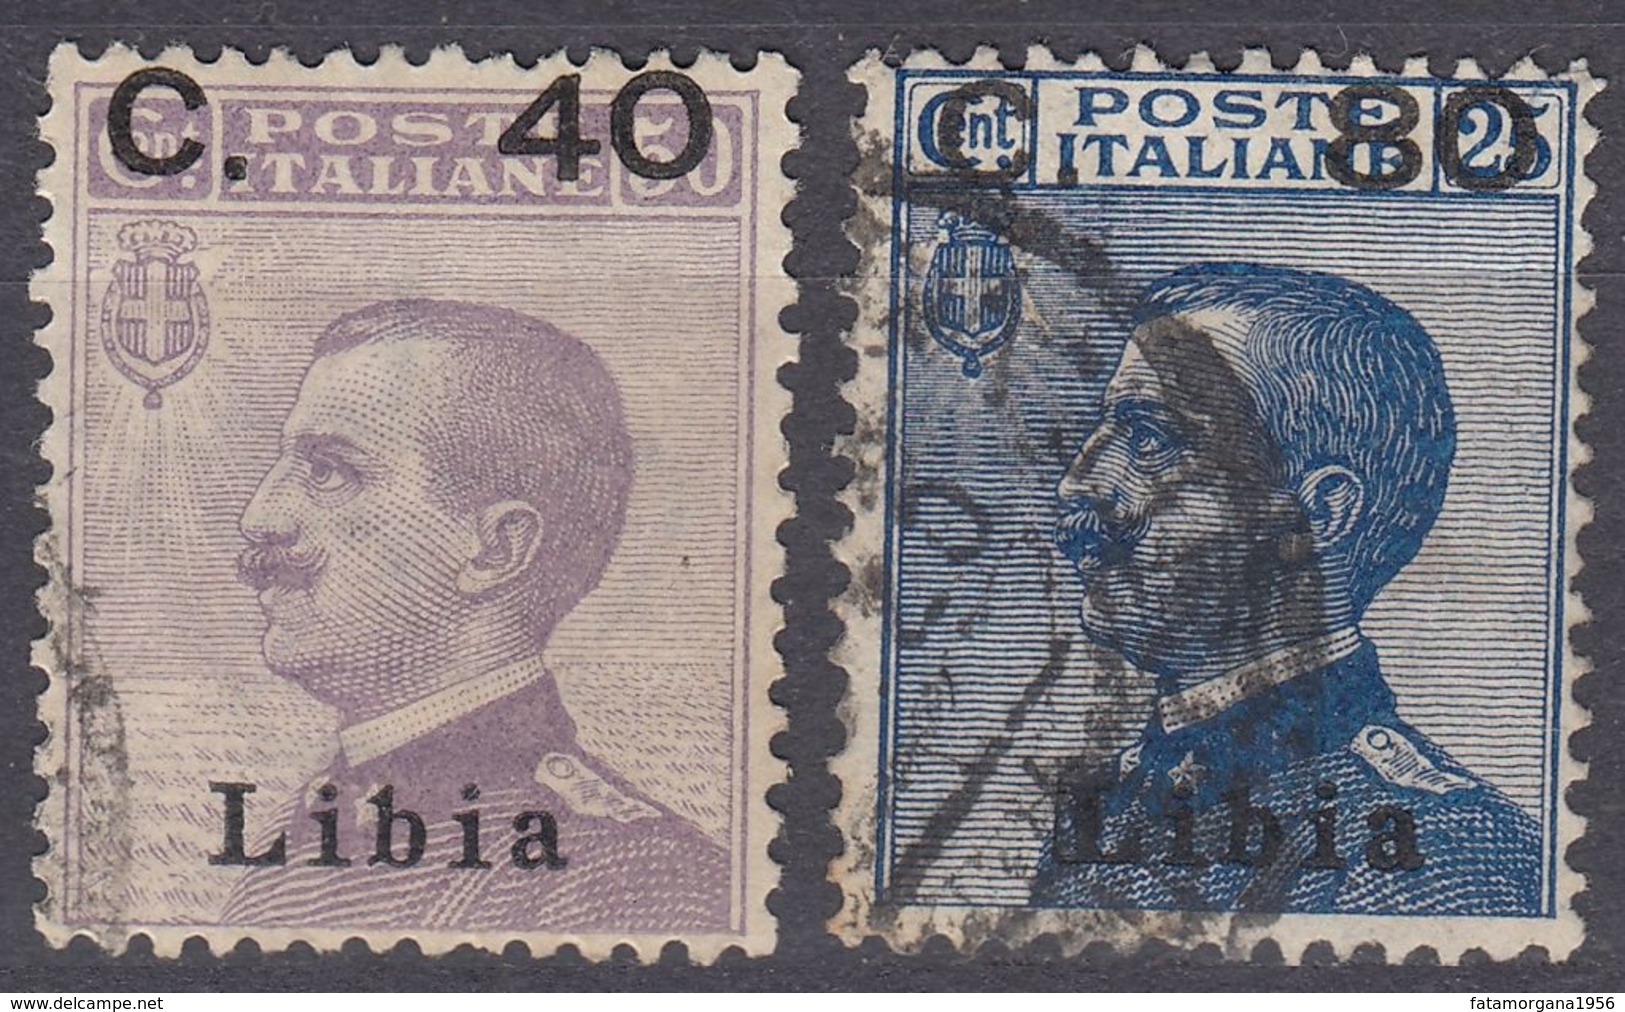 LIBIA (COLONIA ITALIANA) - 1922 - Serie Completa Di 2 Valori Usati: Yvert 38/39, Come Da Immagine. - Libye